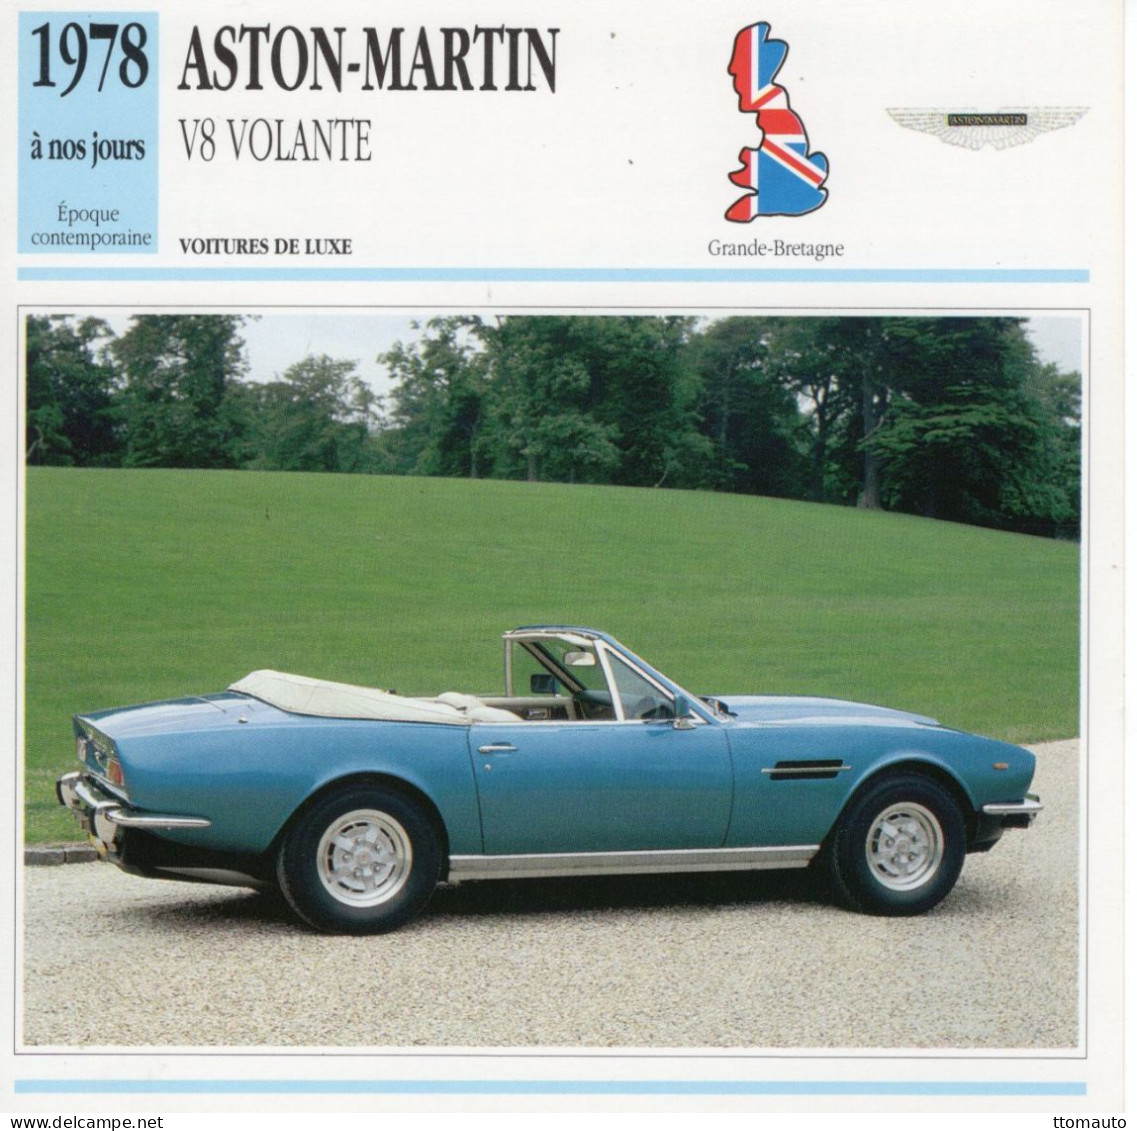 Aston-Martin Volante V8 Cabriolet  -  1978  - Voiture De Luxe -  Fiche Technique Automobile (GB) - Coches